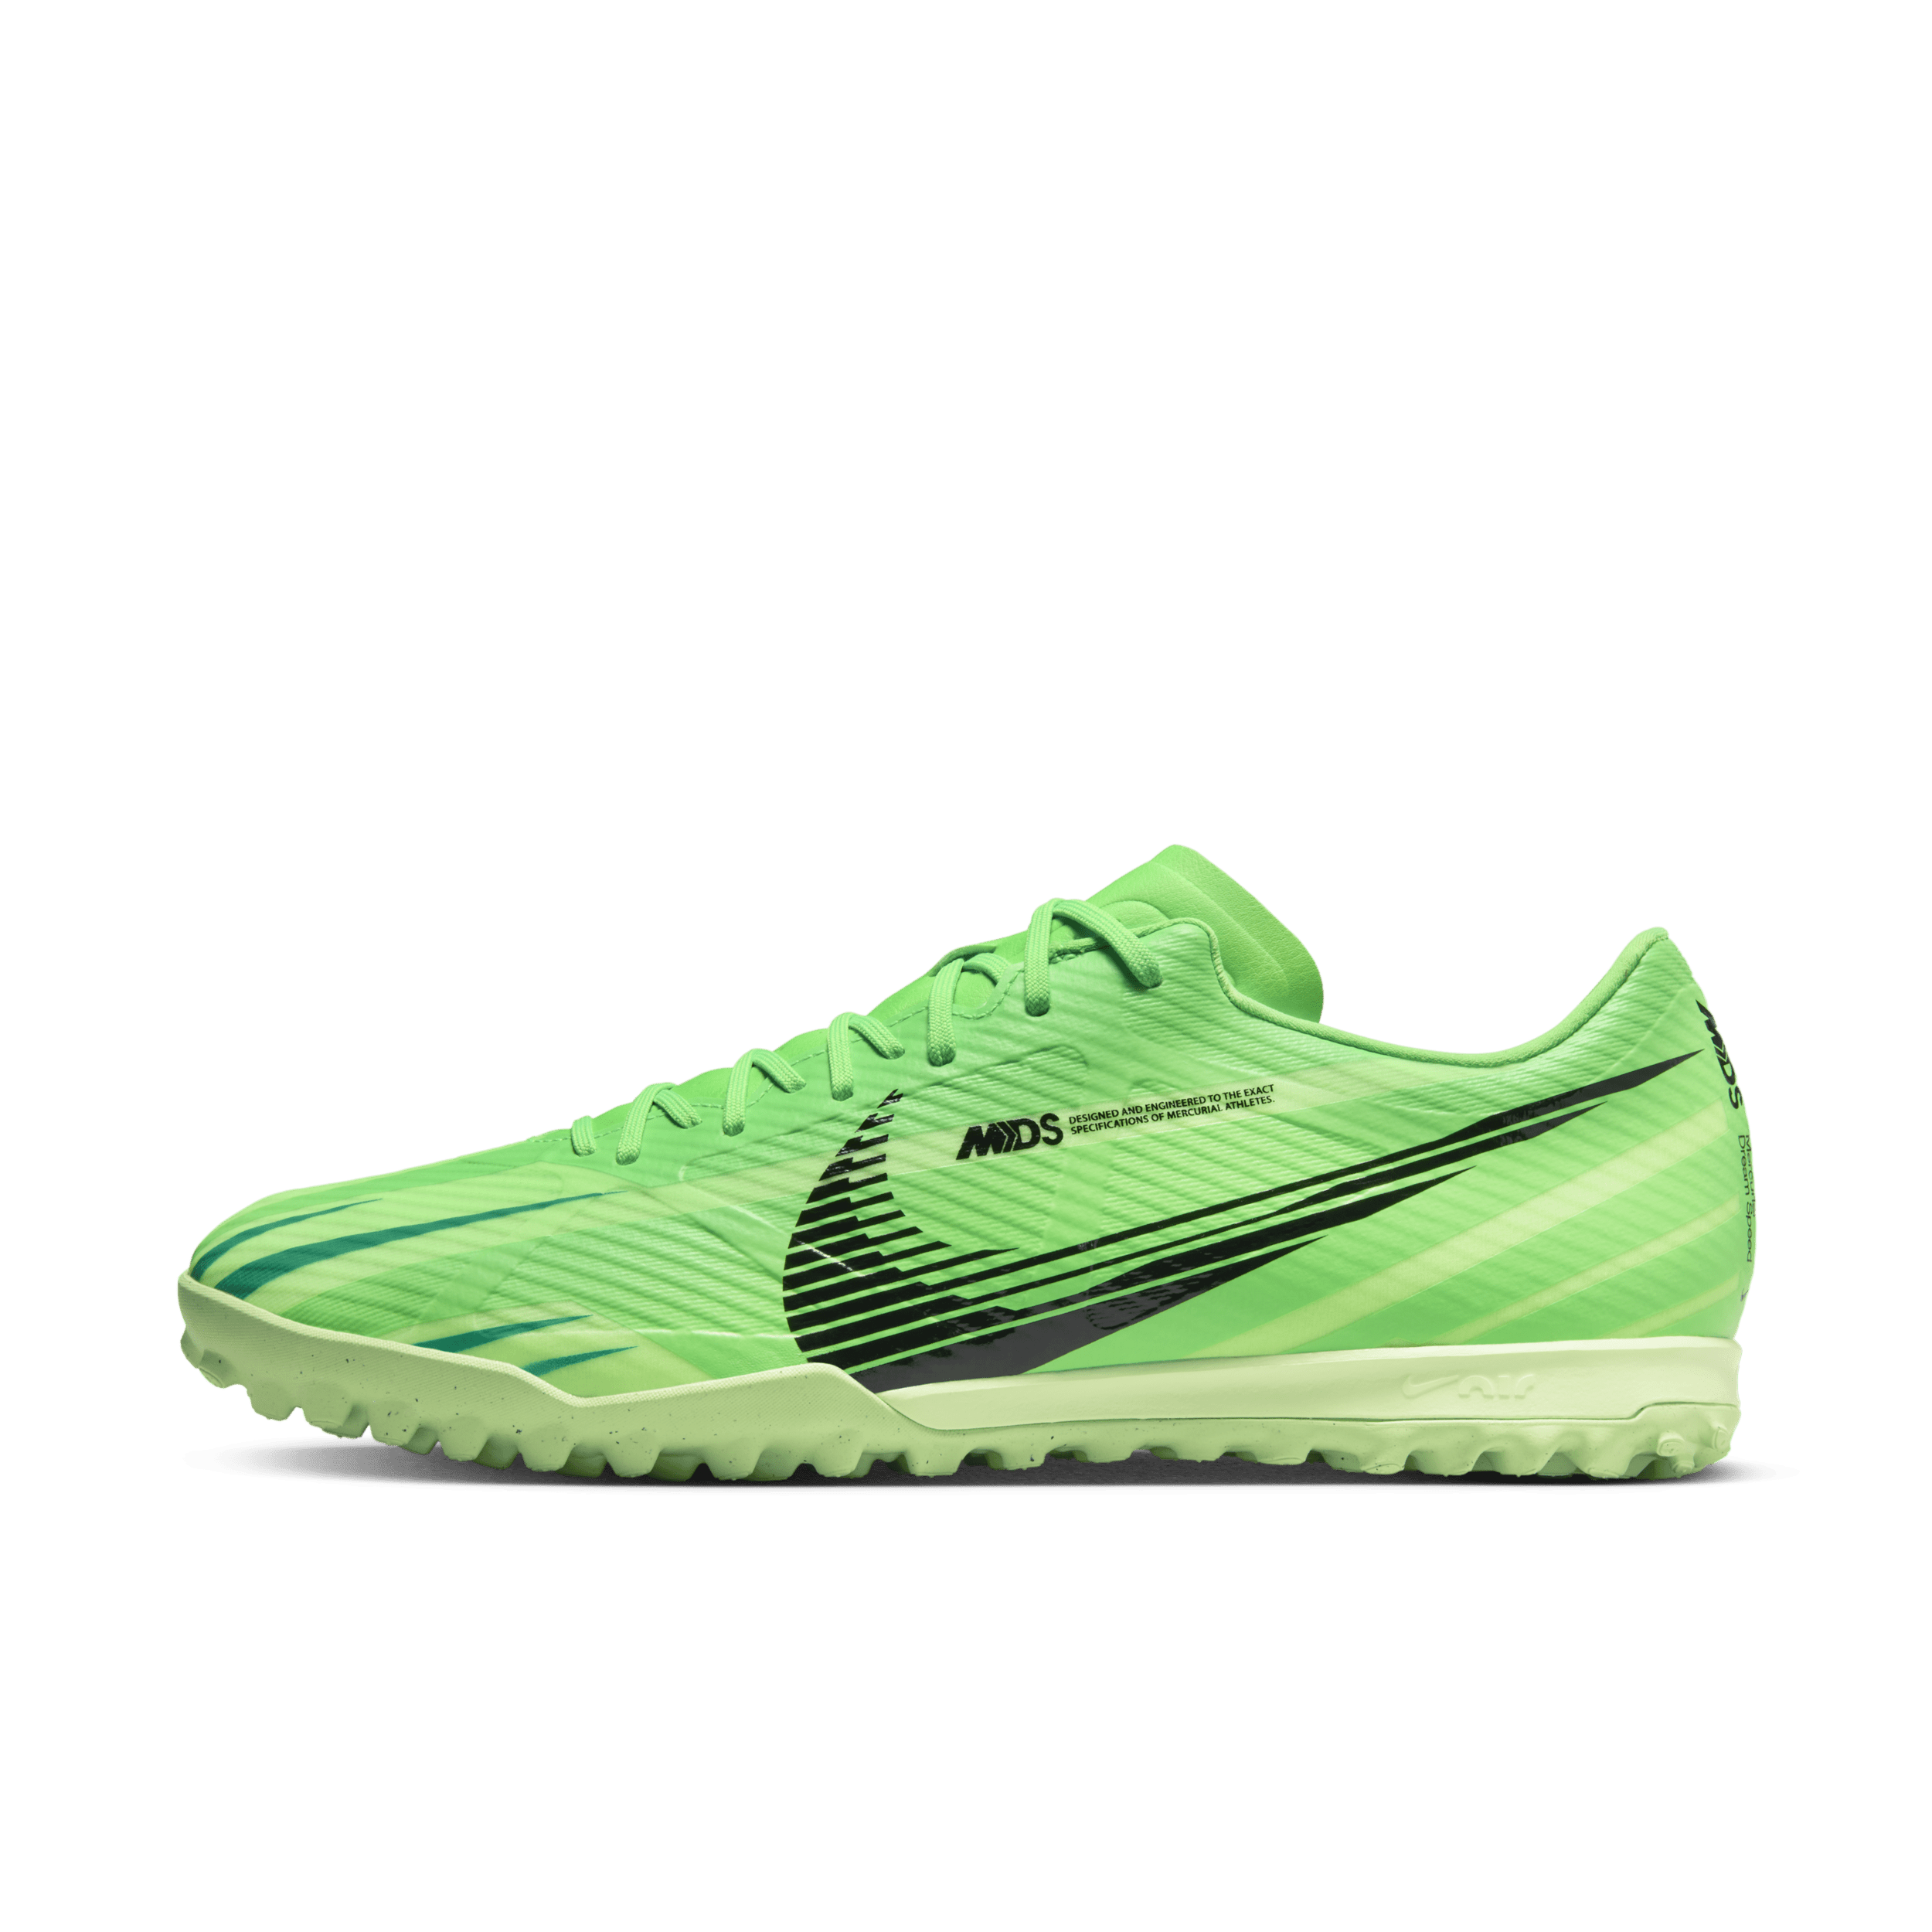 Nike Vapor 15 Academy Mercurial Dream Speed low-top voetbalschoenen (turf) - Groen